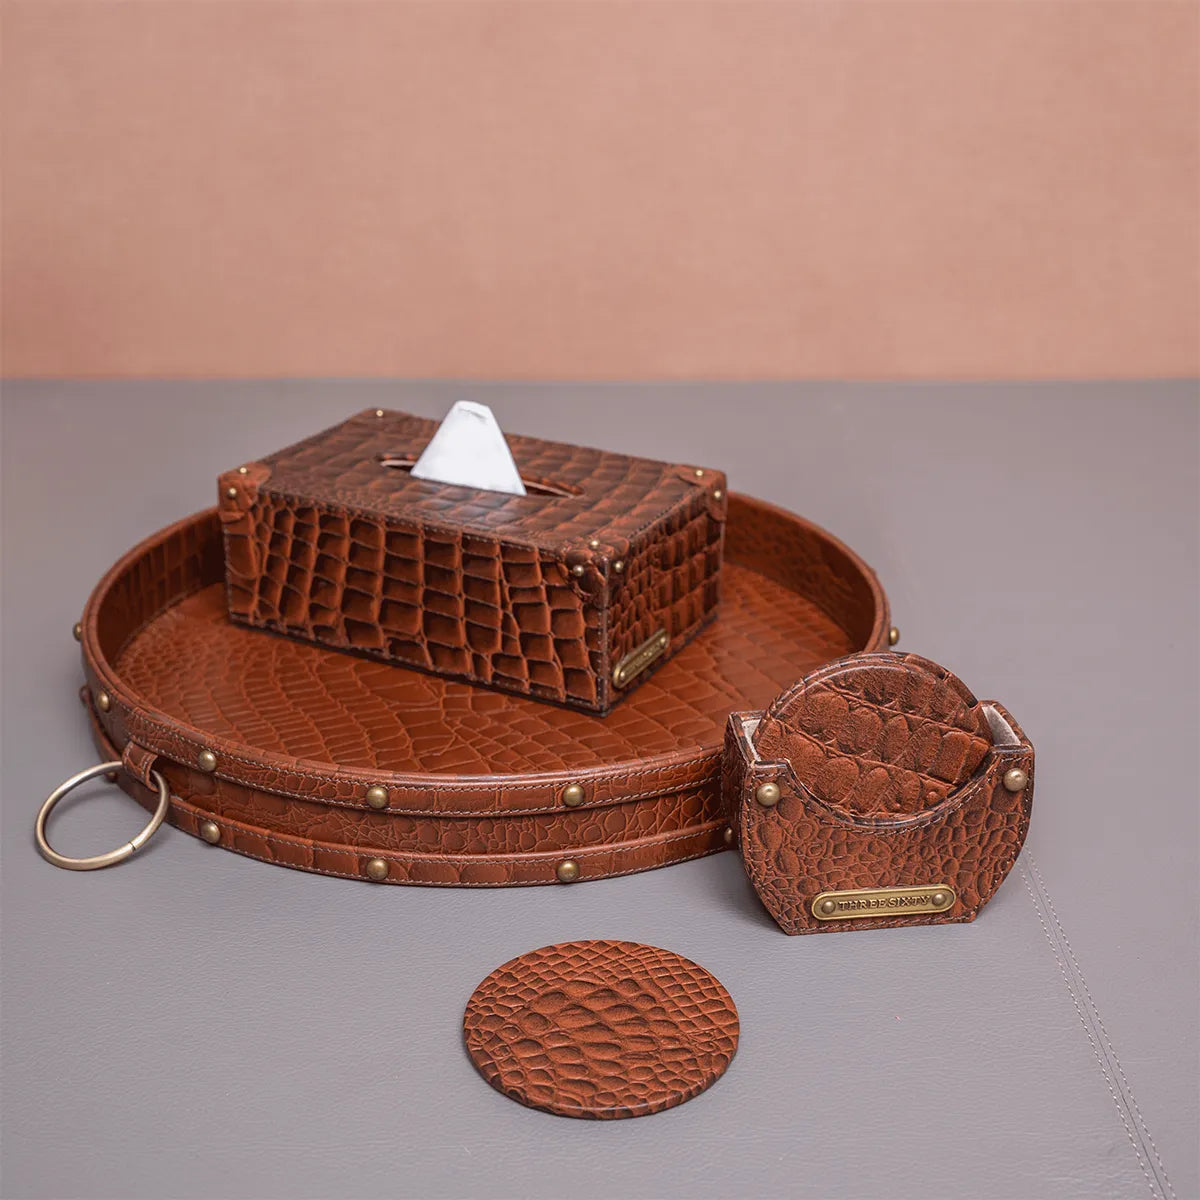 Eden Round Tray Set with Tissue Box & Coasters Tan